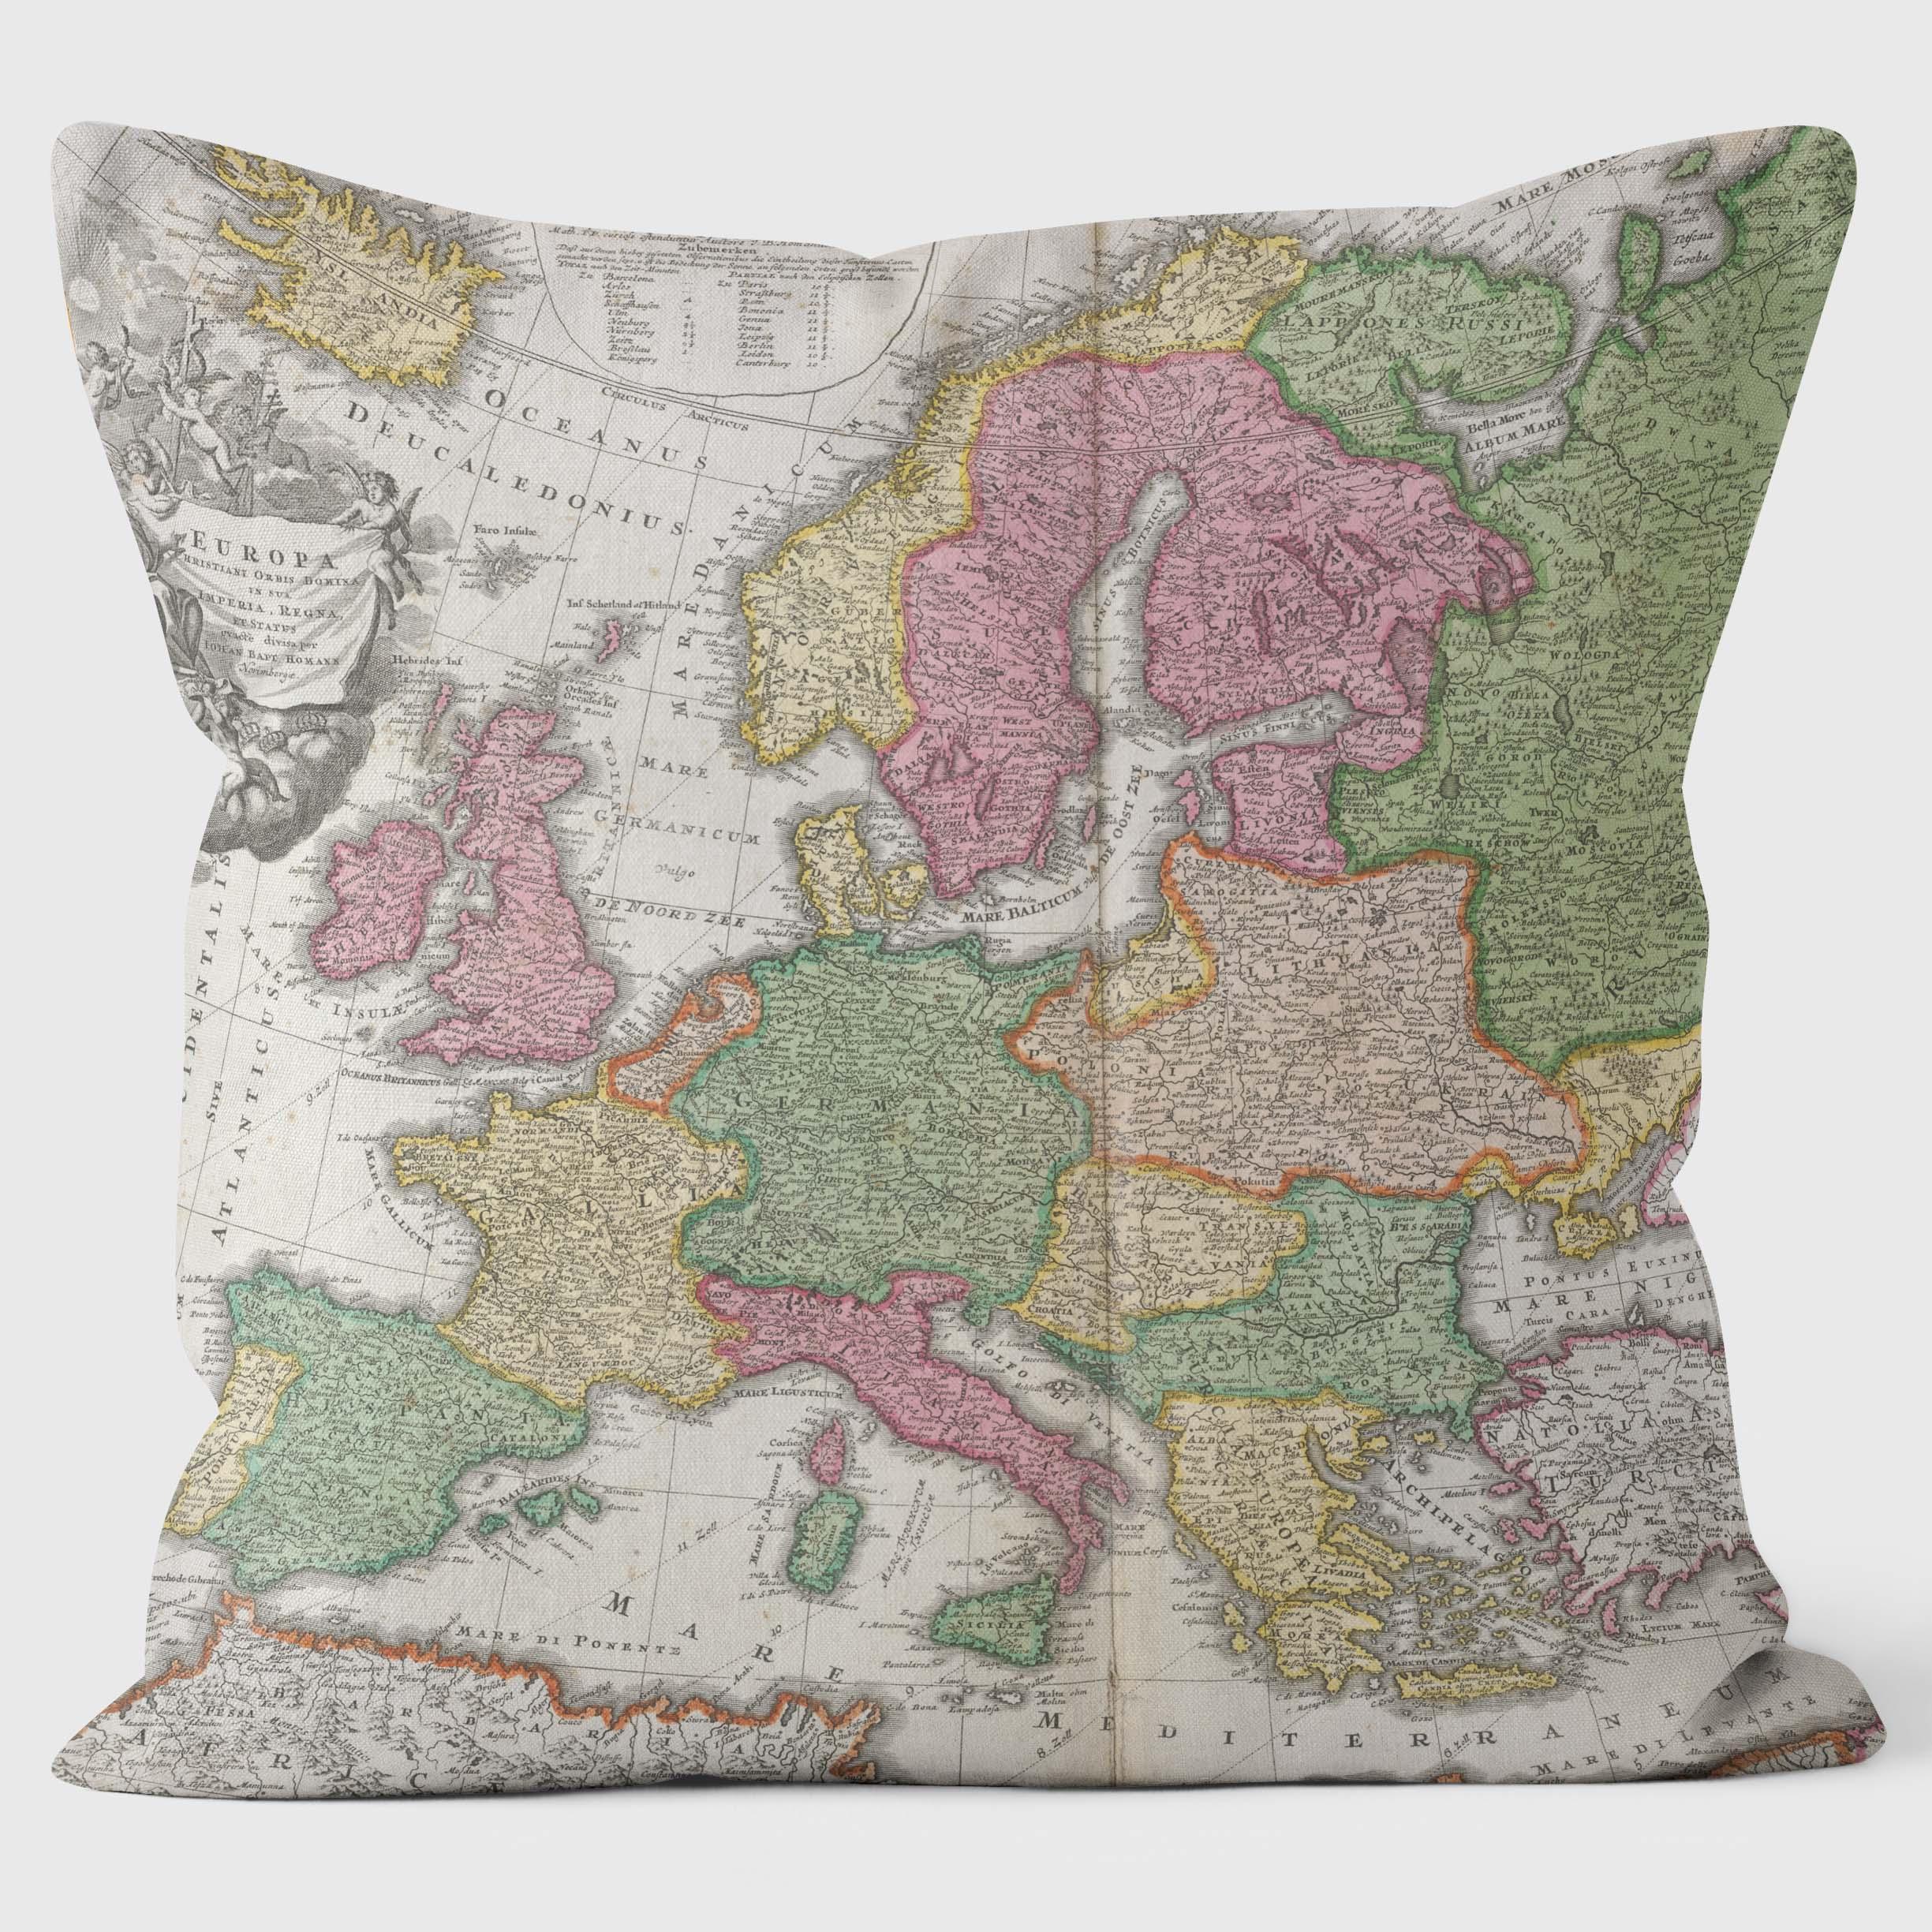 1665 Europe Map - British Library Cushions - Handmade Cushions UK - WeLoveCushions